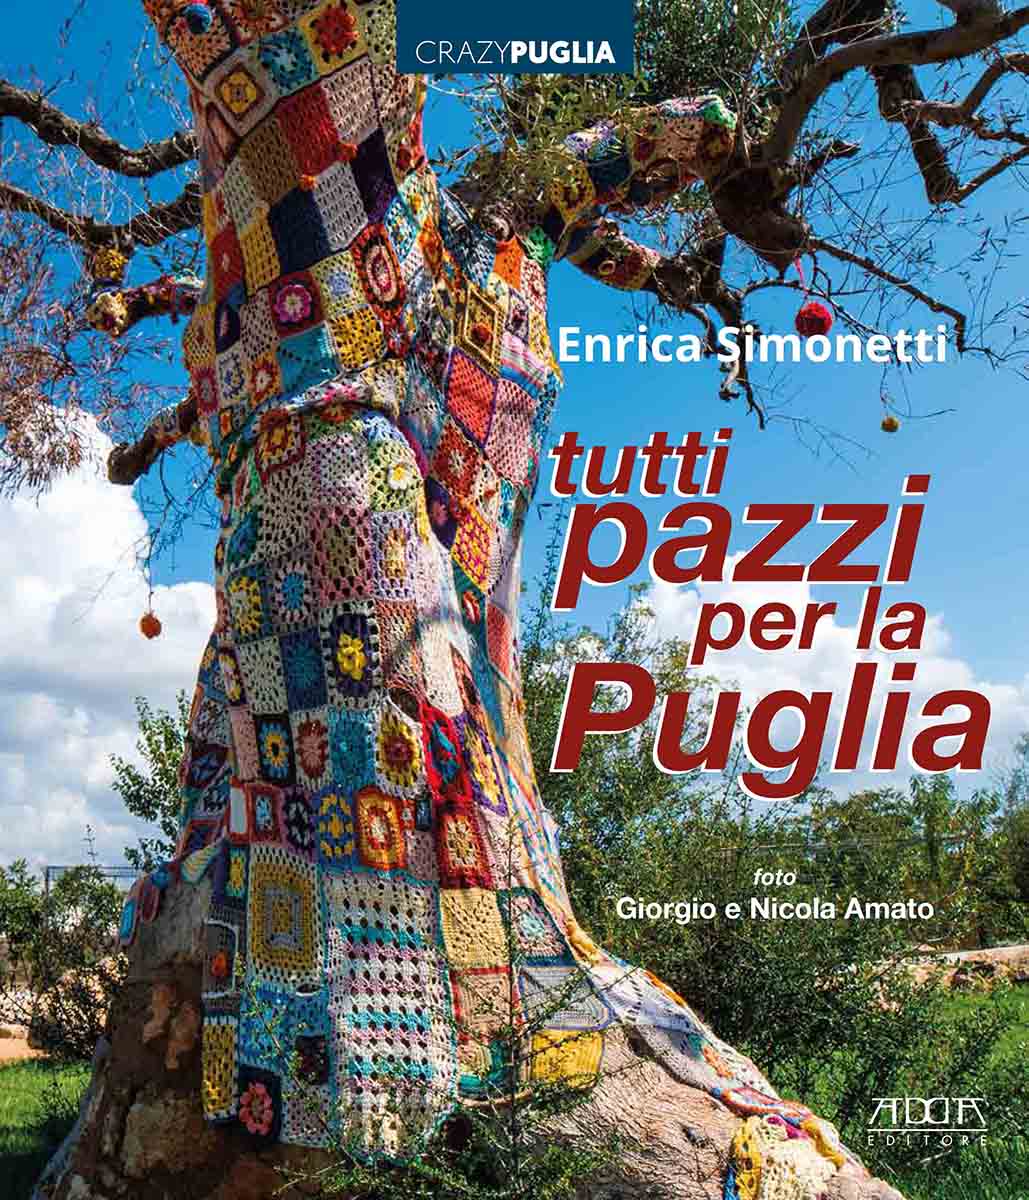 Enrica Simonetti - Tutti pazzi per la Puglia” width=